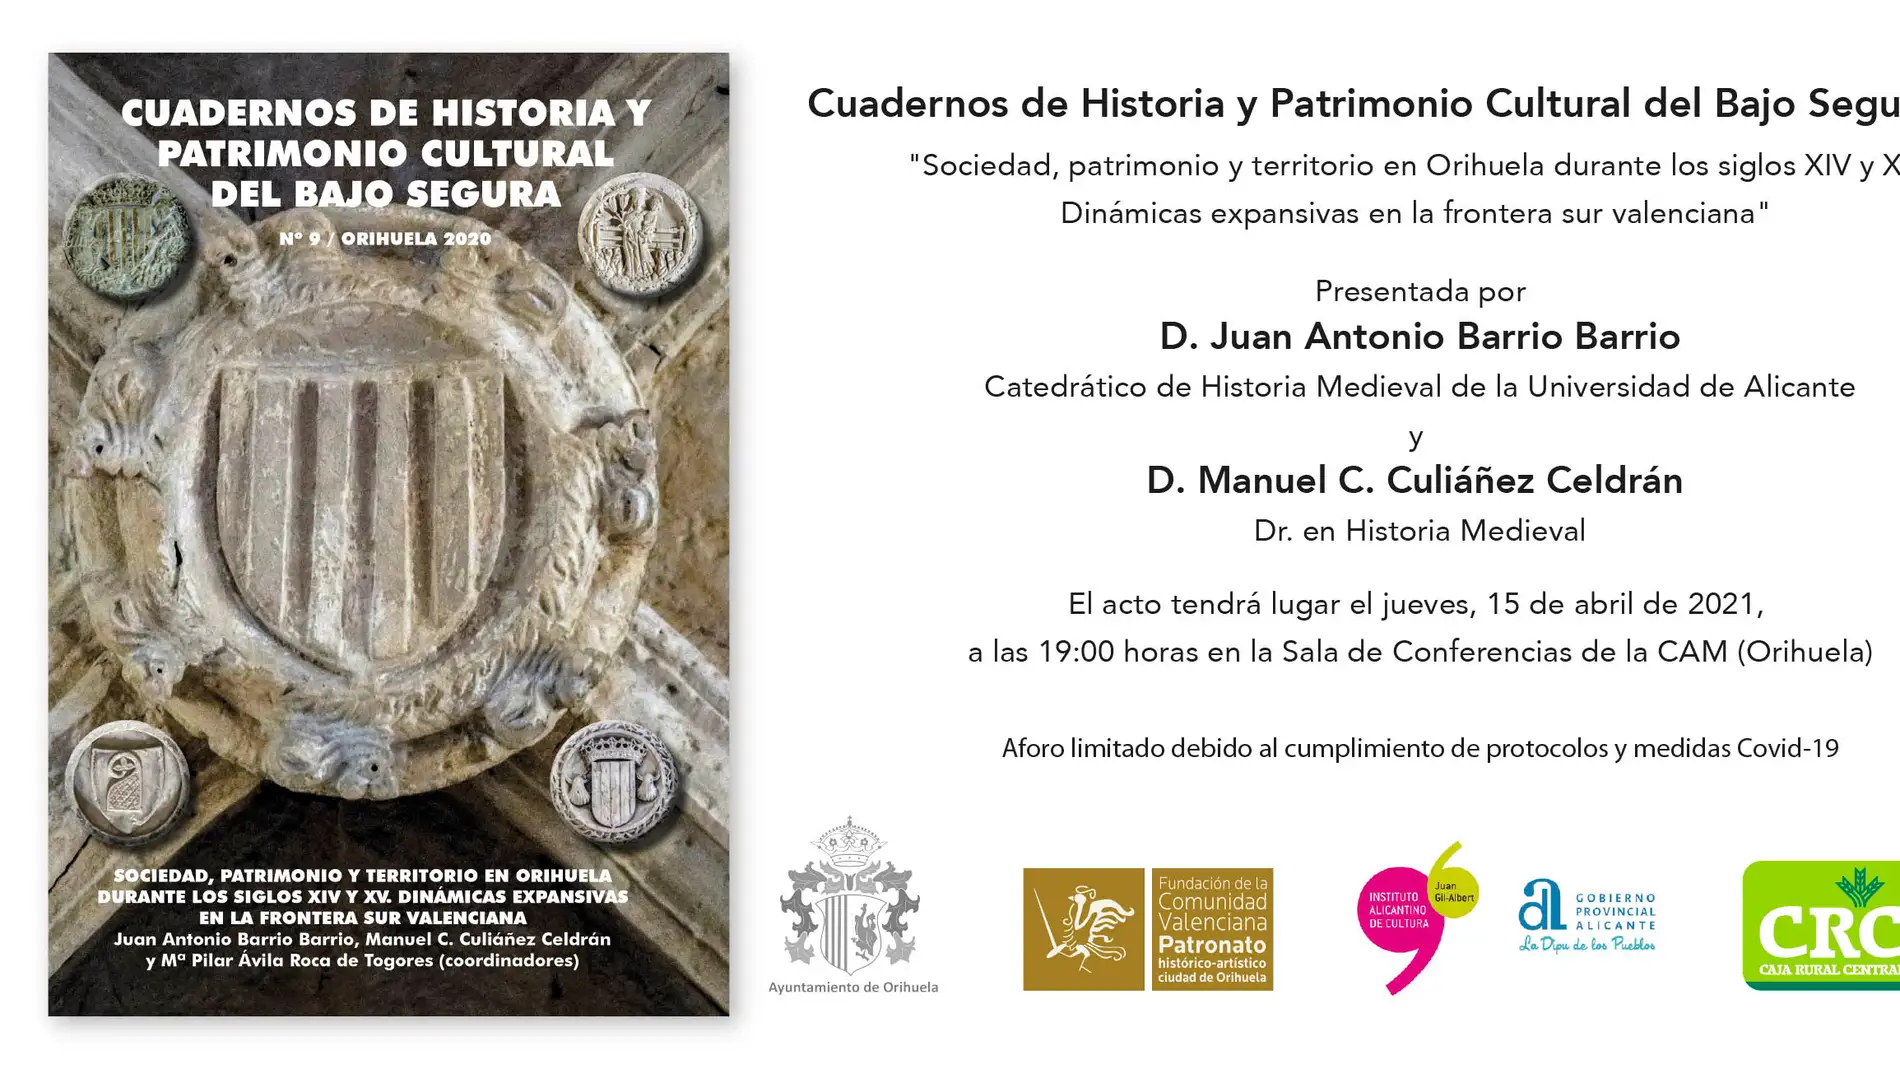 "Sociedad, patrimonio y territorio en Orihuela durante los siglos XIV Y XV. Dinámicas expansivas en la frontera sur valenciana" 